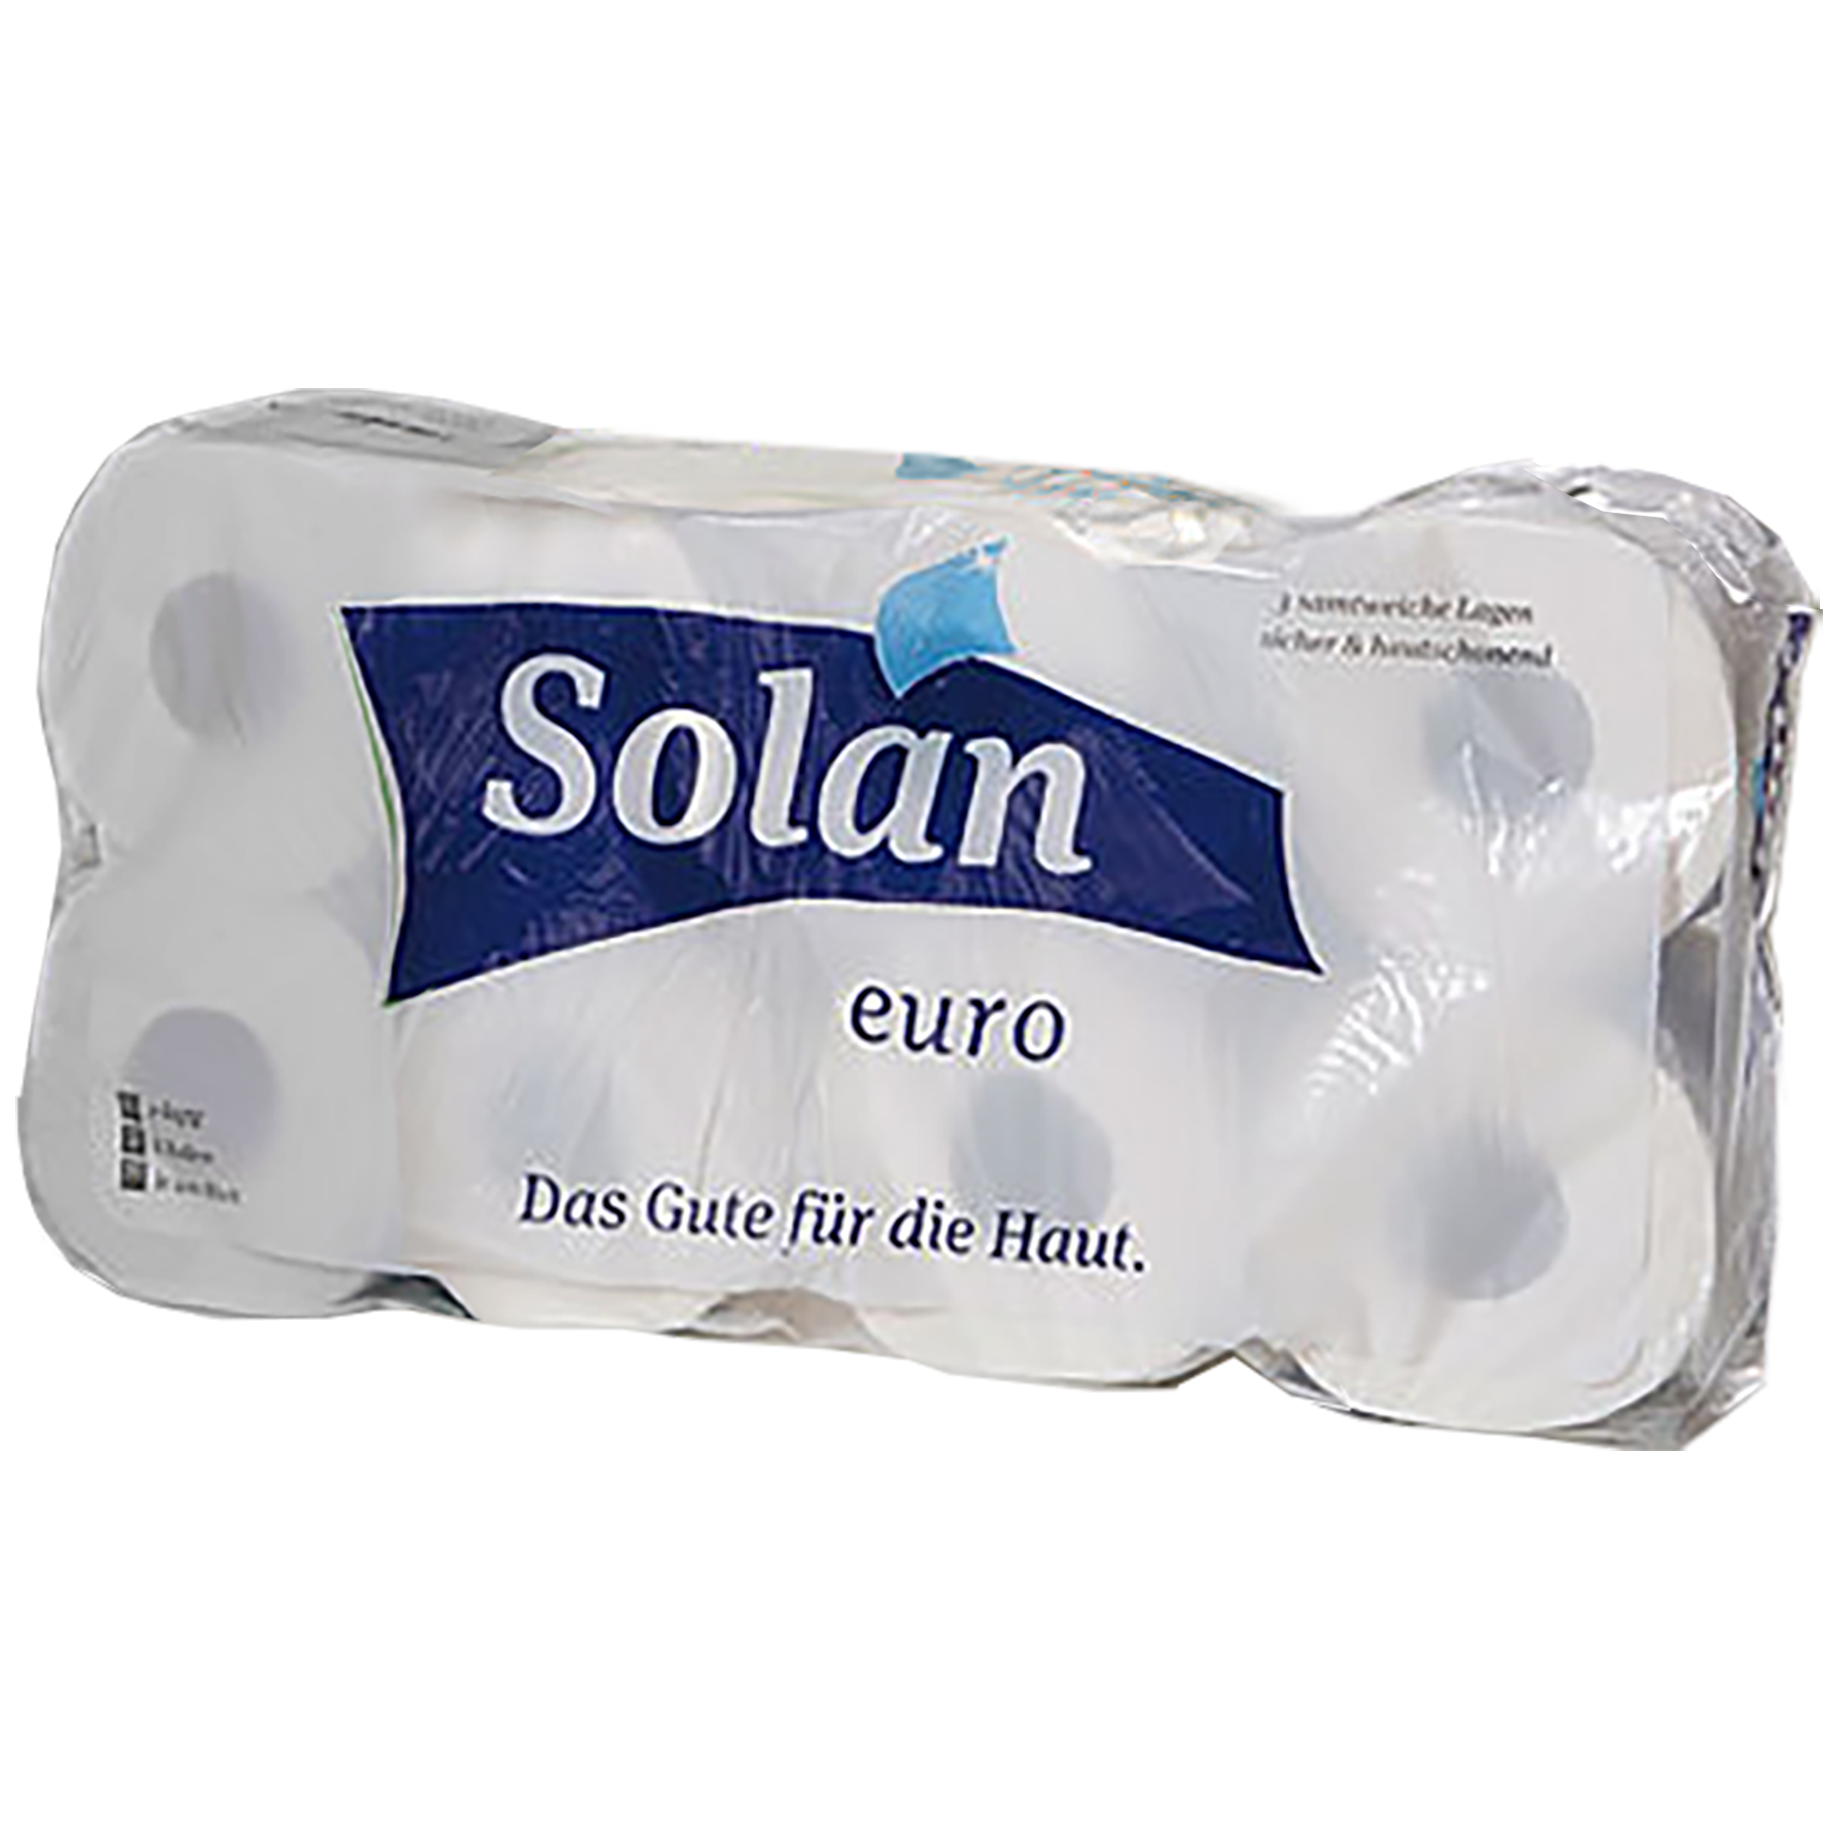 Toilettenpapier SOLAN euro